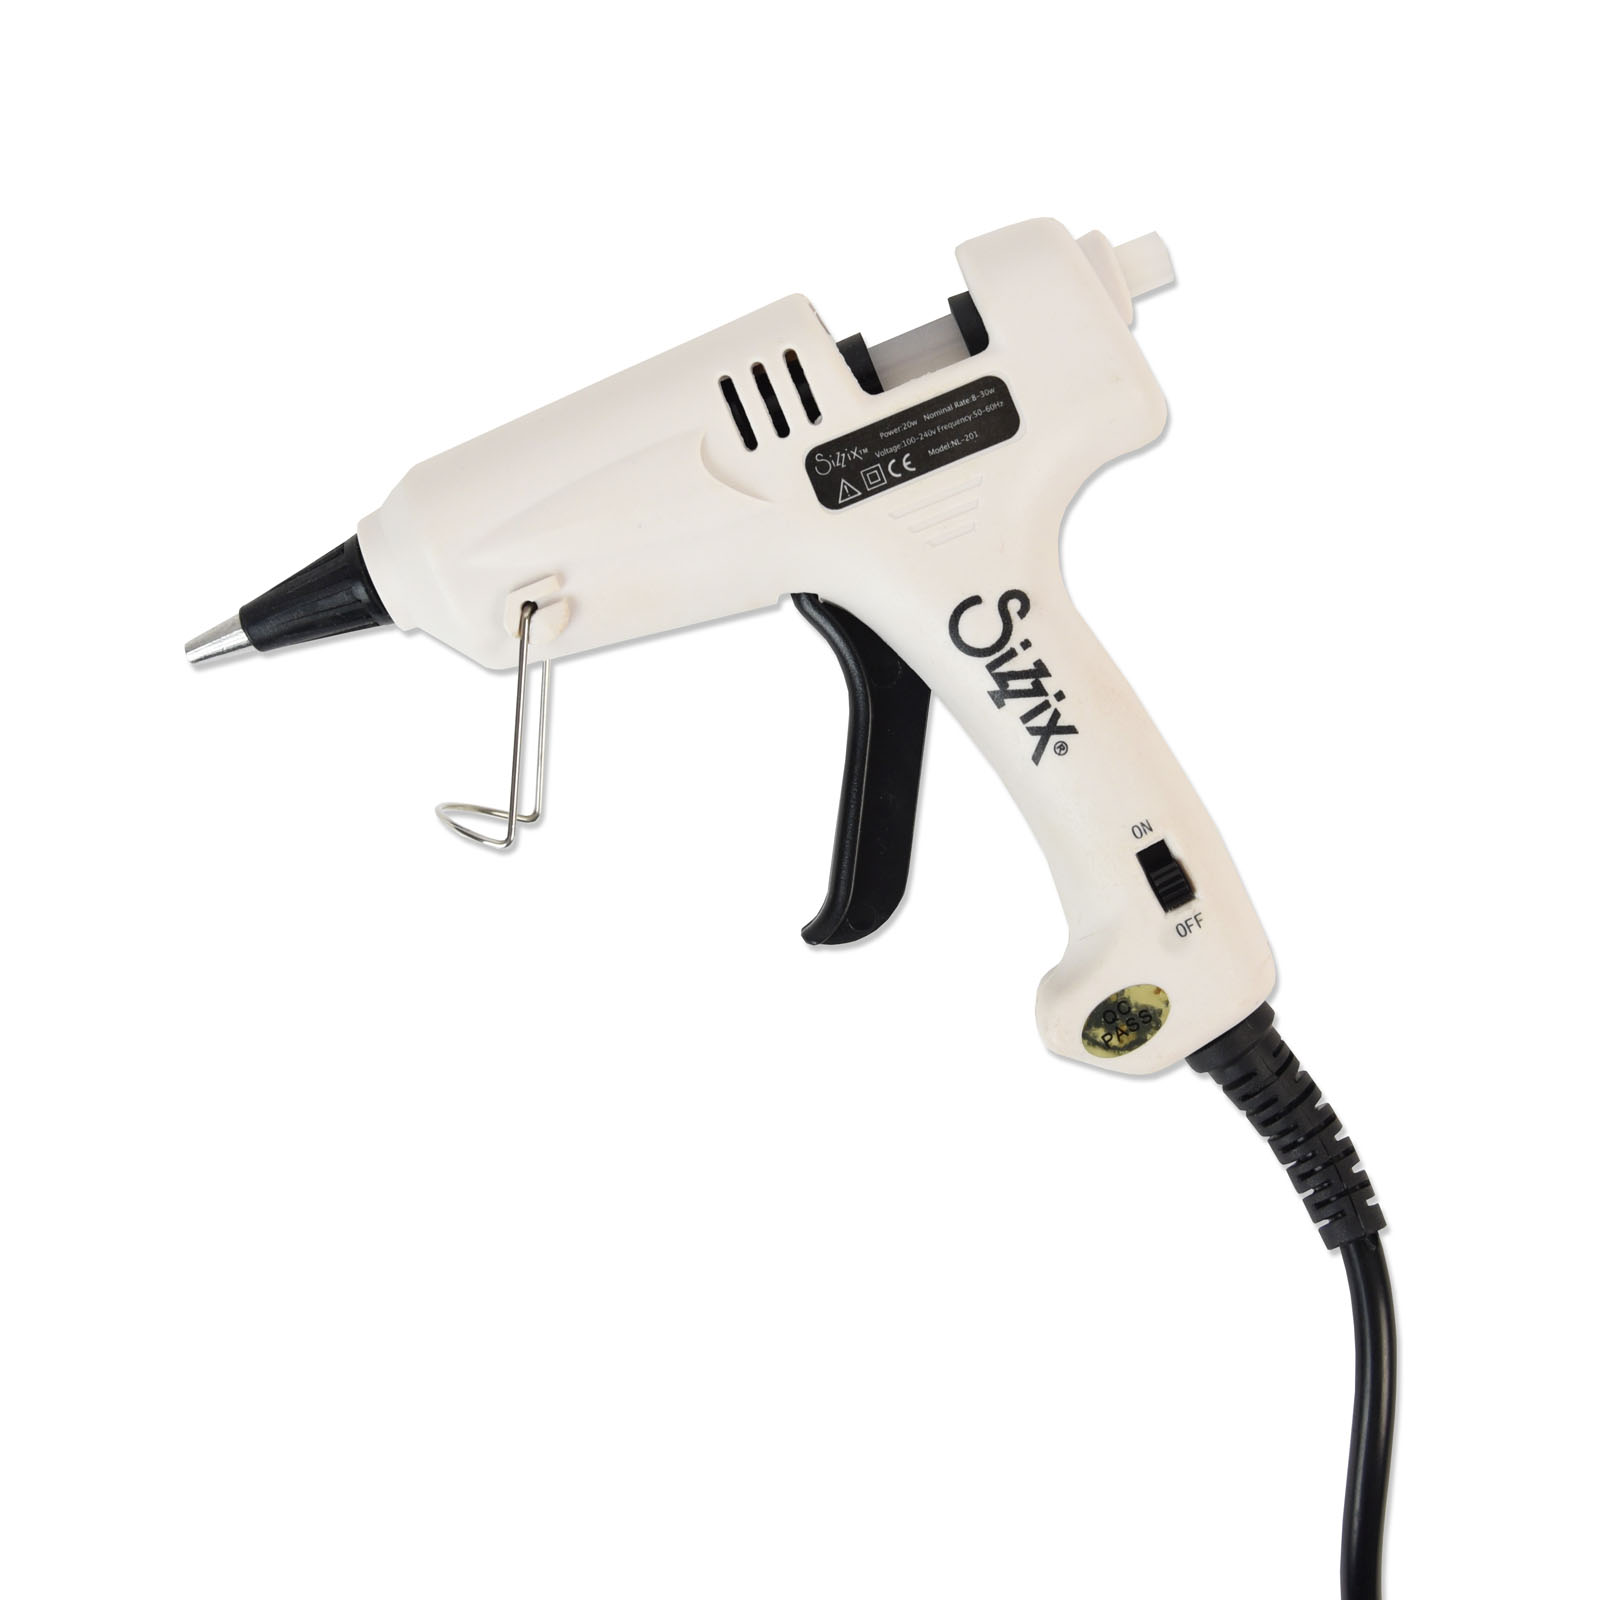 Sizzix • Pistola de pegamento para herramientas de fabricación (versión del Reino Unido con adaptador de la UE)